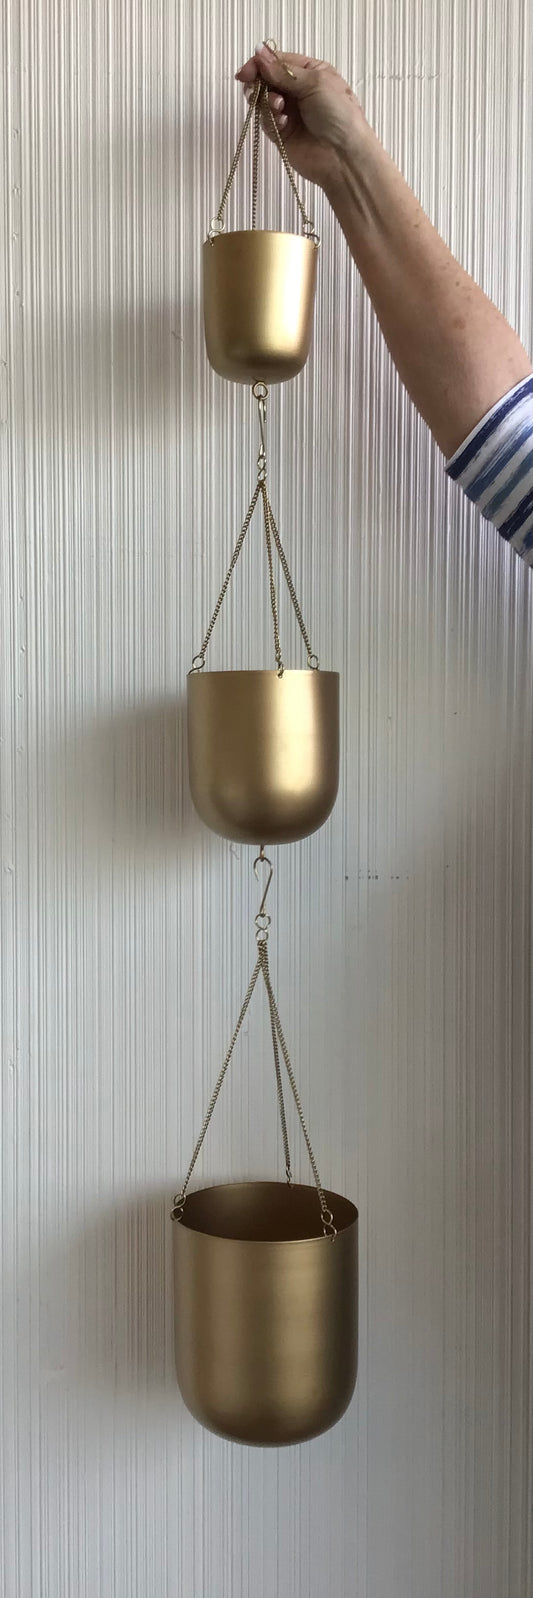 Ajax Hanging Pot